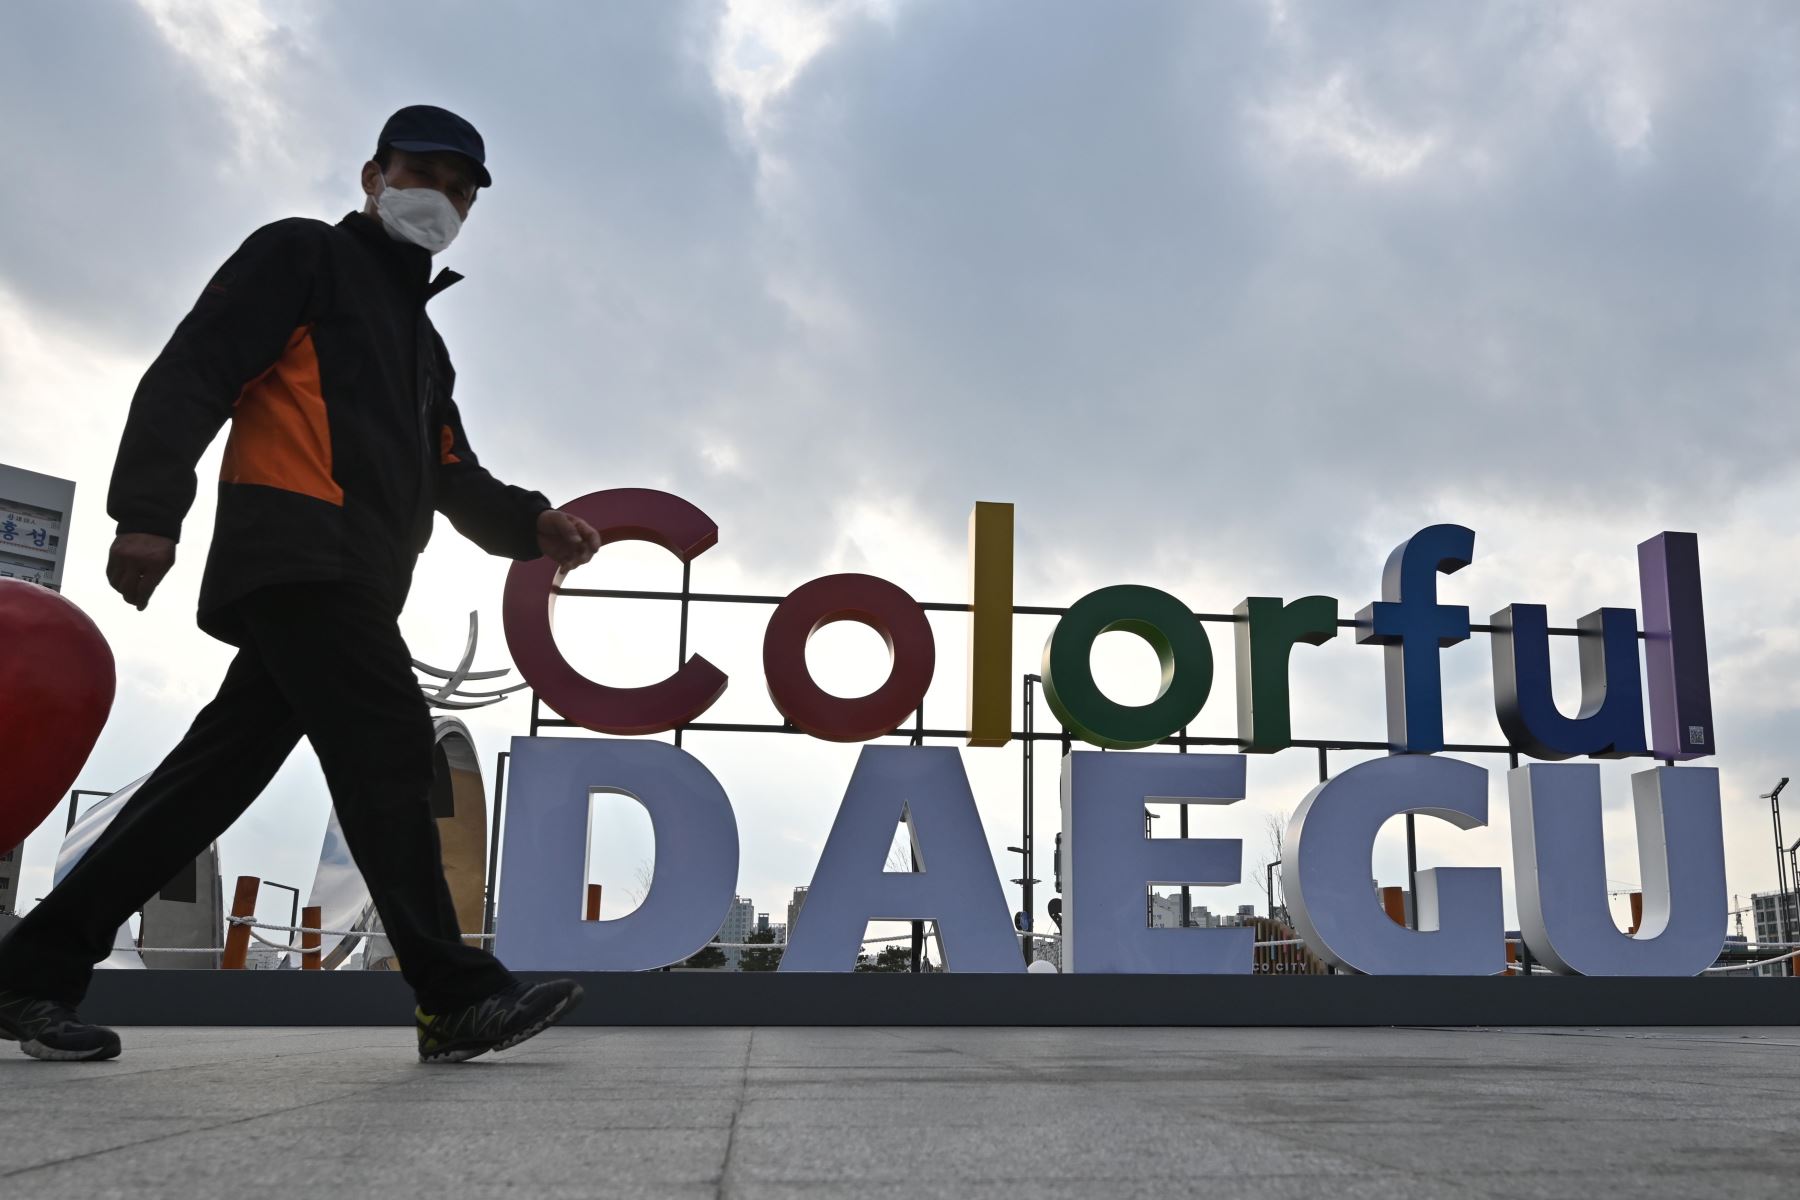 Un hombre lleva una máscara facial protectora, como medida preventiva contra el coronavirus COVID-19, camina cerca de la estación de ferrocarril de Dongdaegu. Foto: AFP